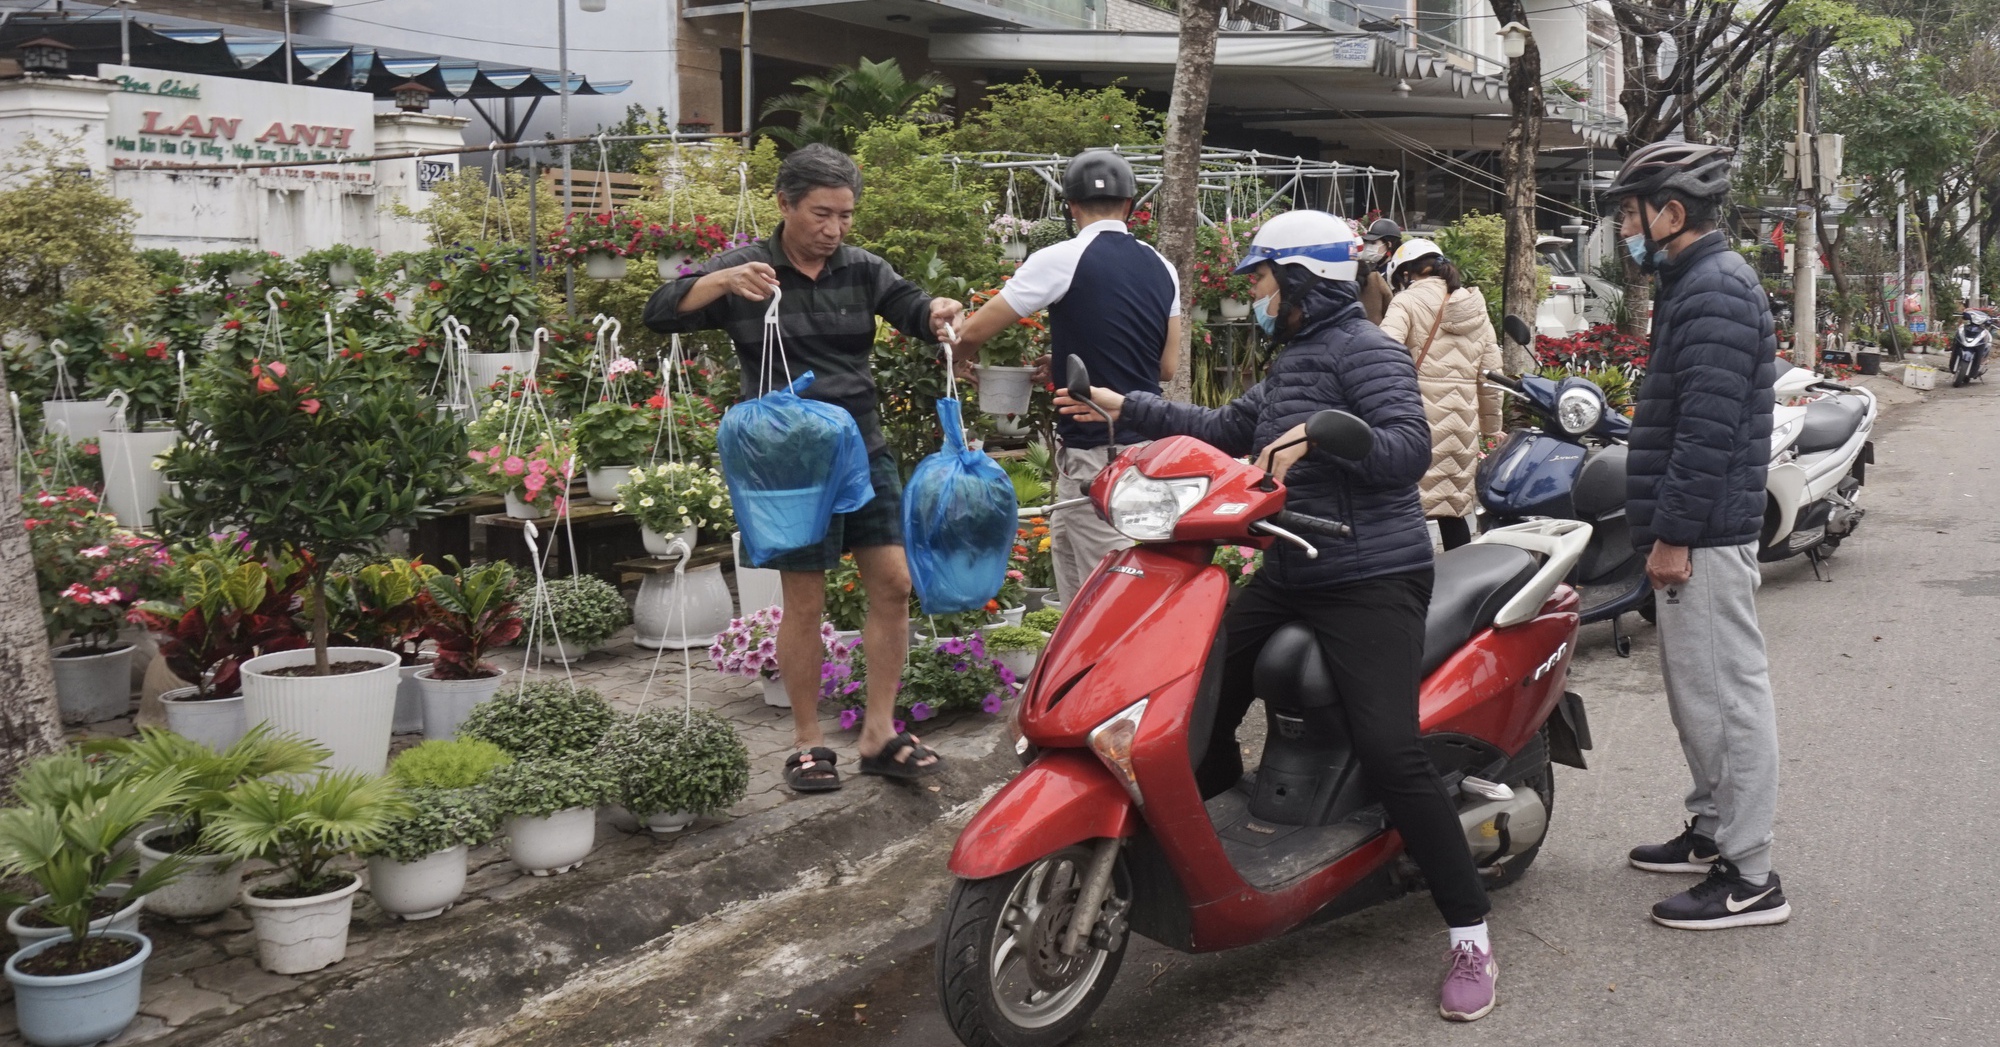 Đà Nẵng: Hoa treo hút hàng, hoa tết ngập tràn trên các tuyến phố chuyên doanh